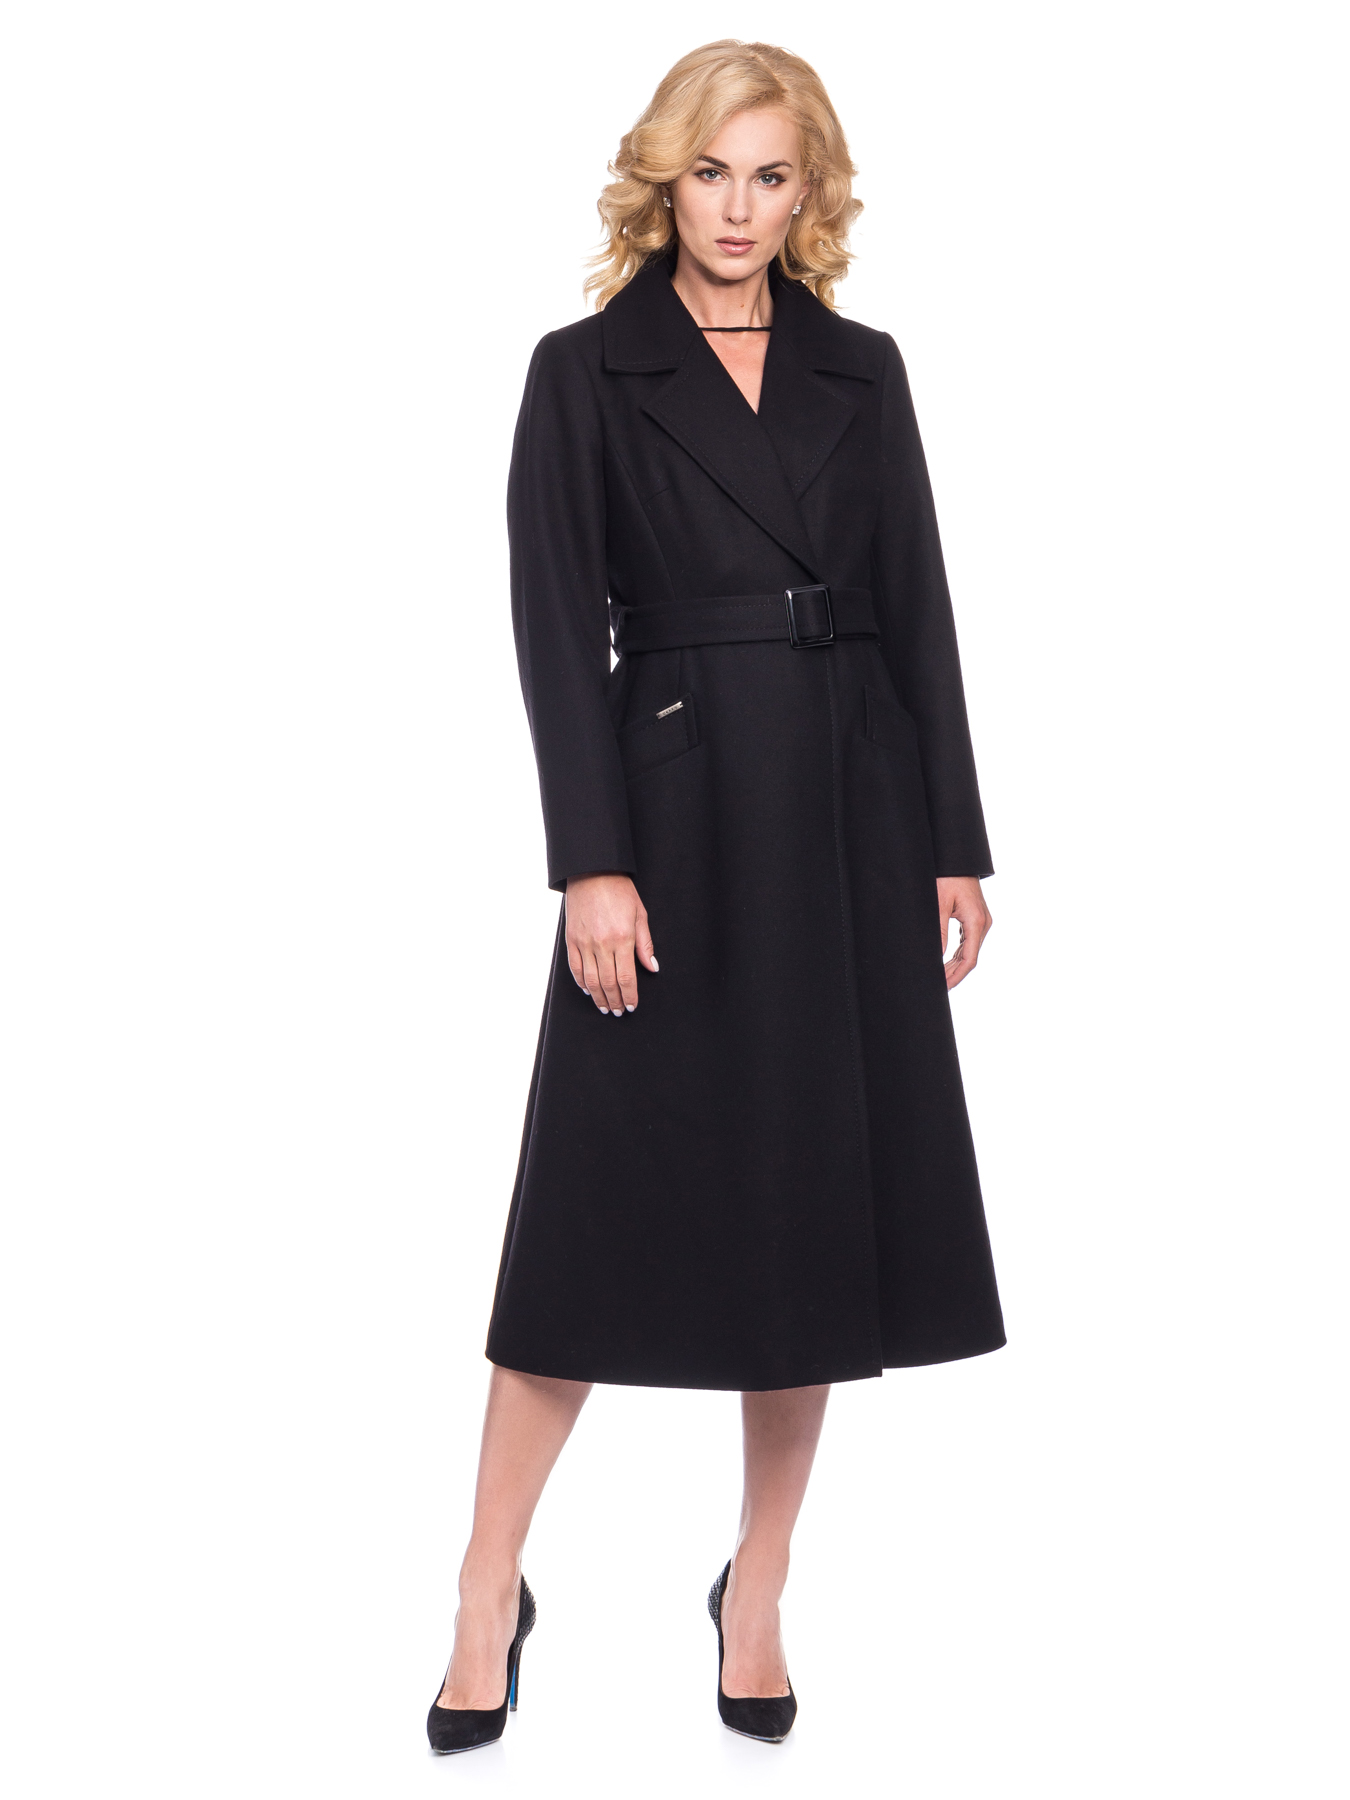 Женское демисезонное пальто из шерсти с облегающей верхней частью и расклешенным низом